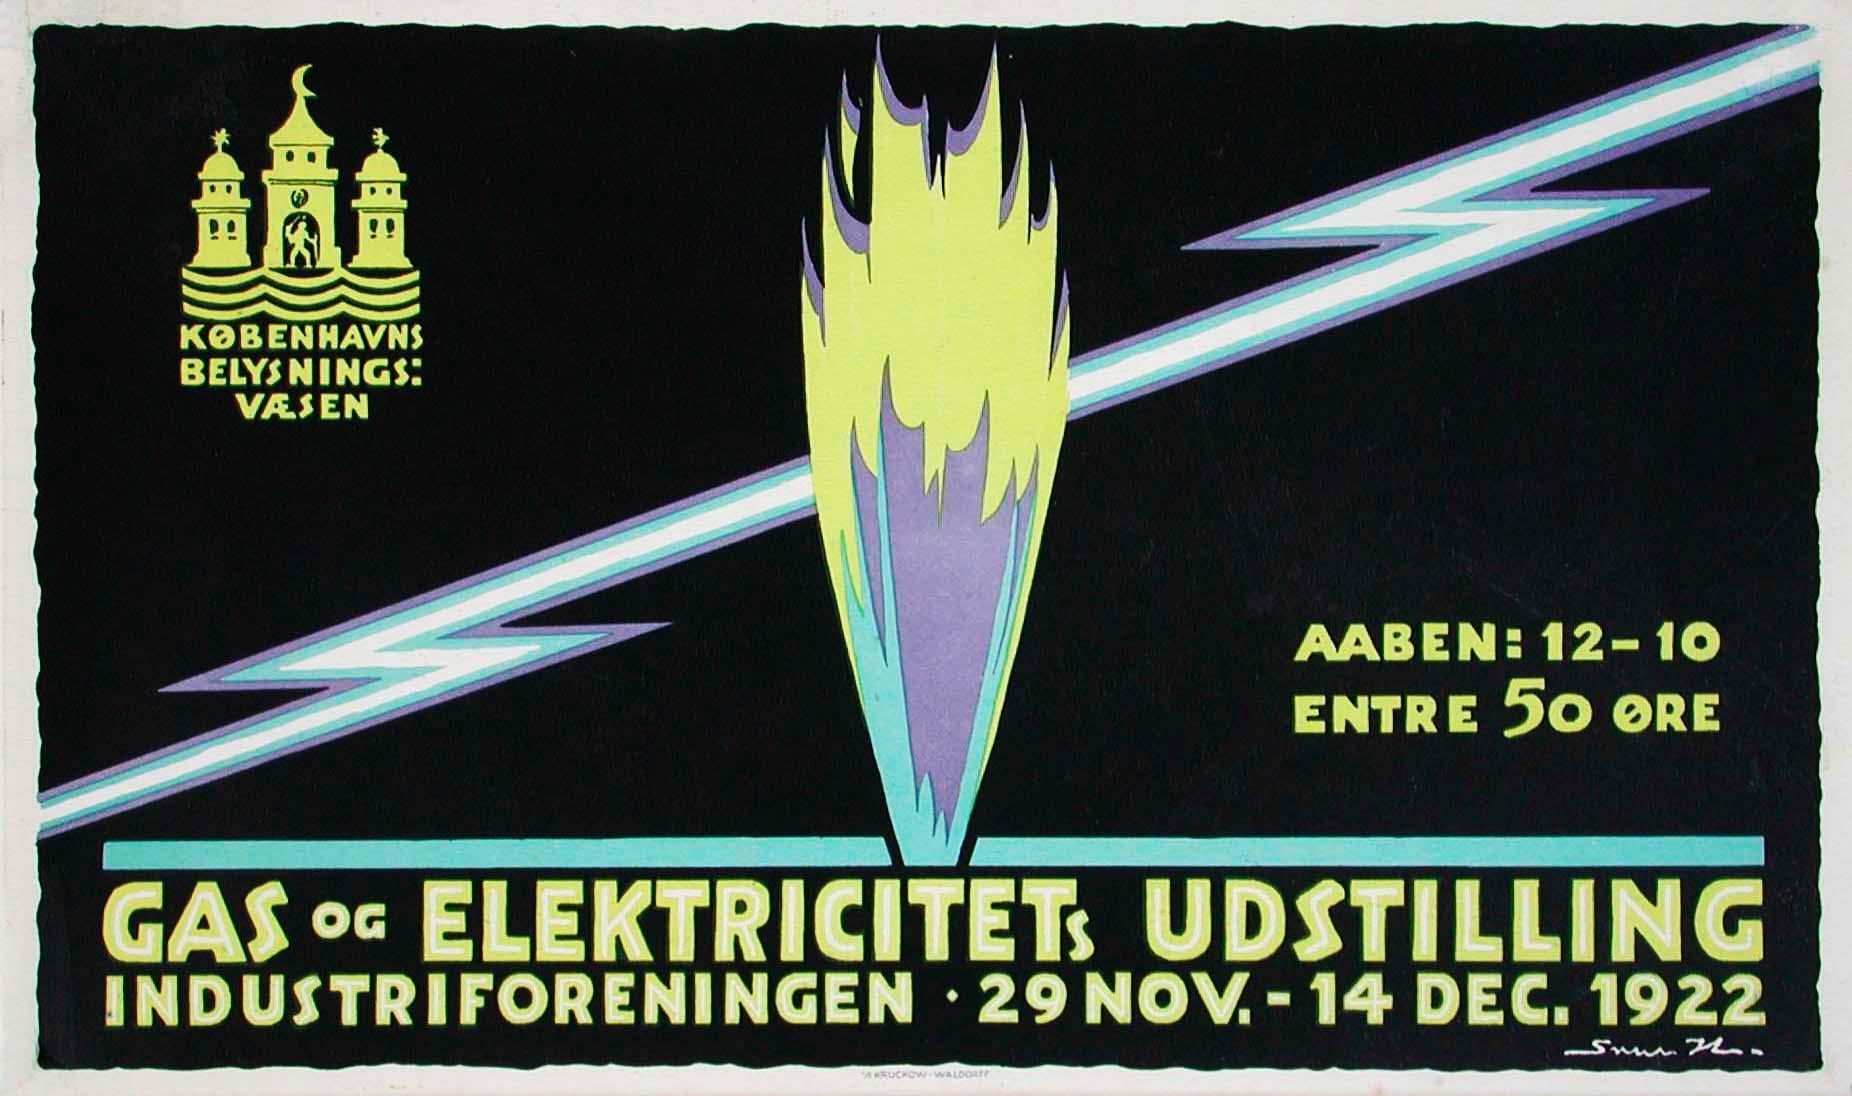 Sven Henrikksen Print - "Gas and Electricity Exhibition" Danish Copenhagen Original Vintage Poster 1922